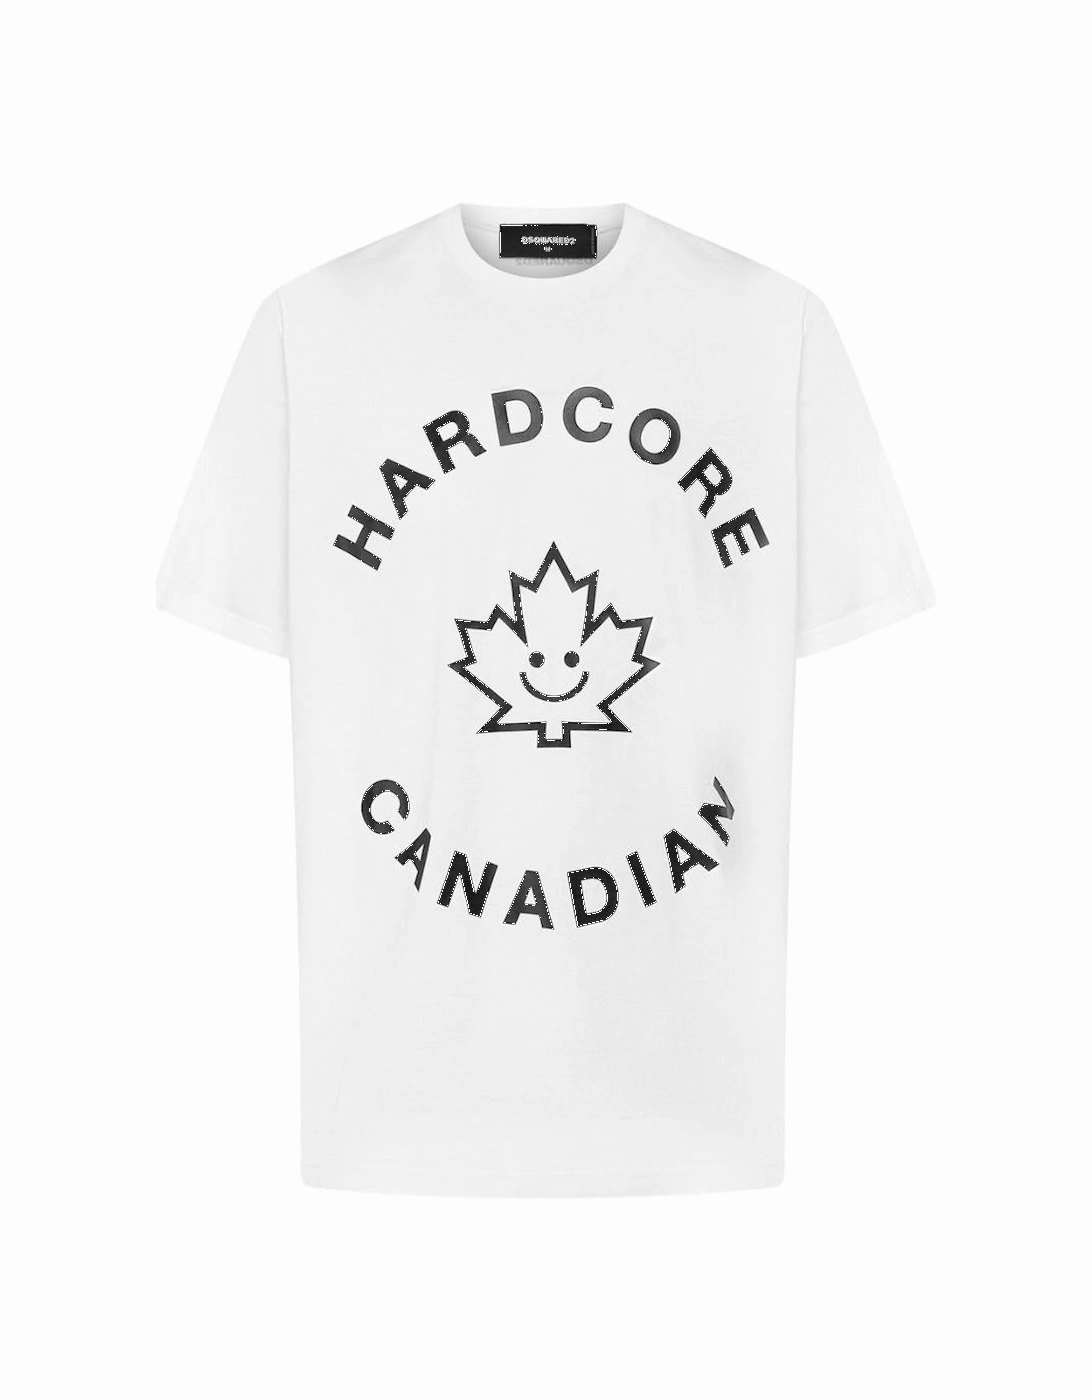 Hardcore Canadian Maple Leaf White T-Shirt, 3 of 2